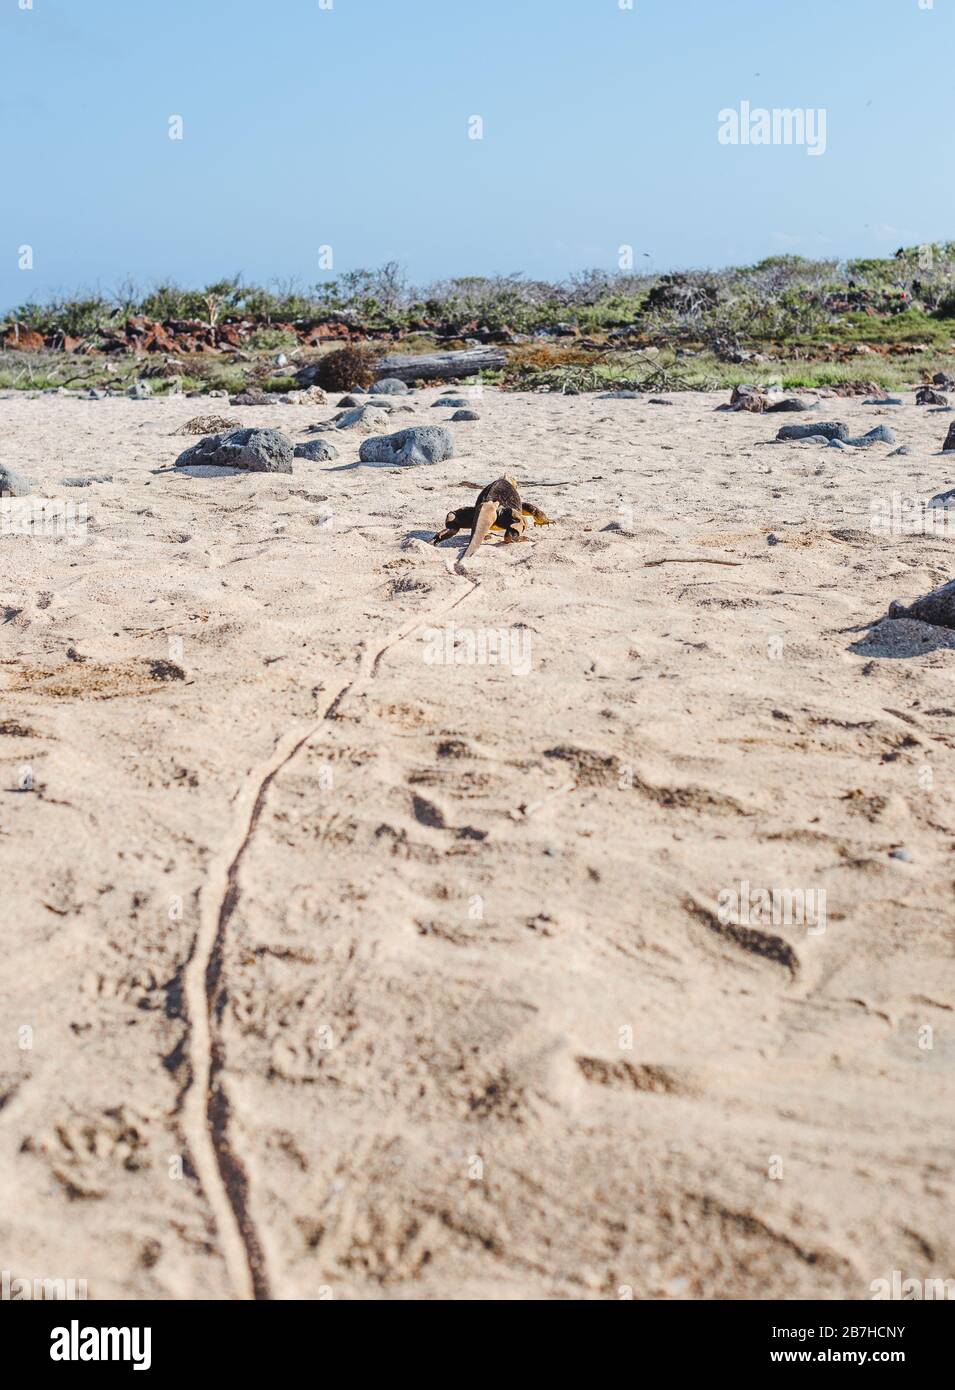 Le sentier dans le sable mène à un grand iguana traînant sa queue à travers la plage sur les îles Galapagos, en Équateur Banque D'Images